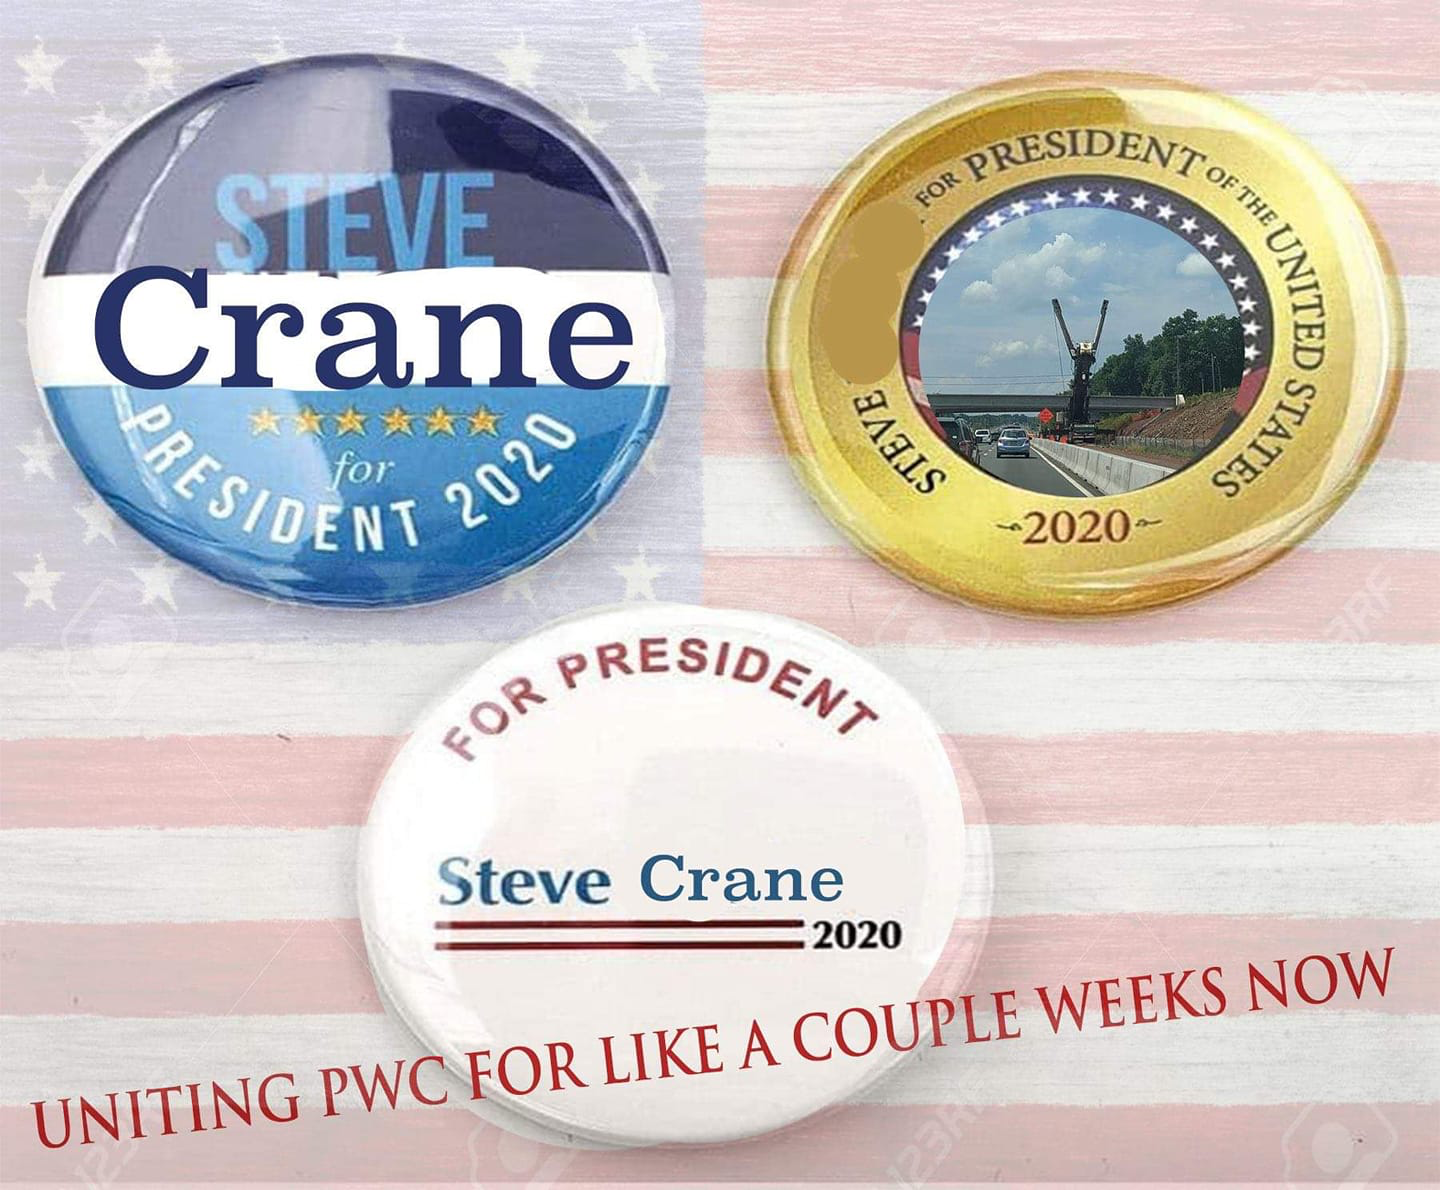 Meme shows "Steve the Crane for President" buttons